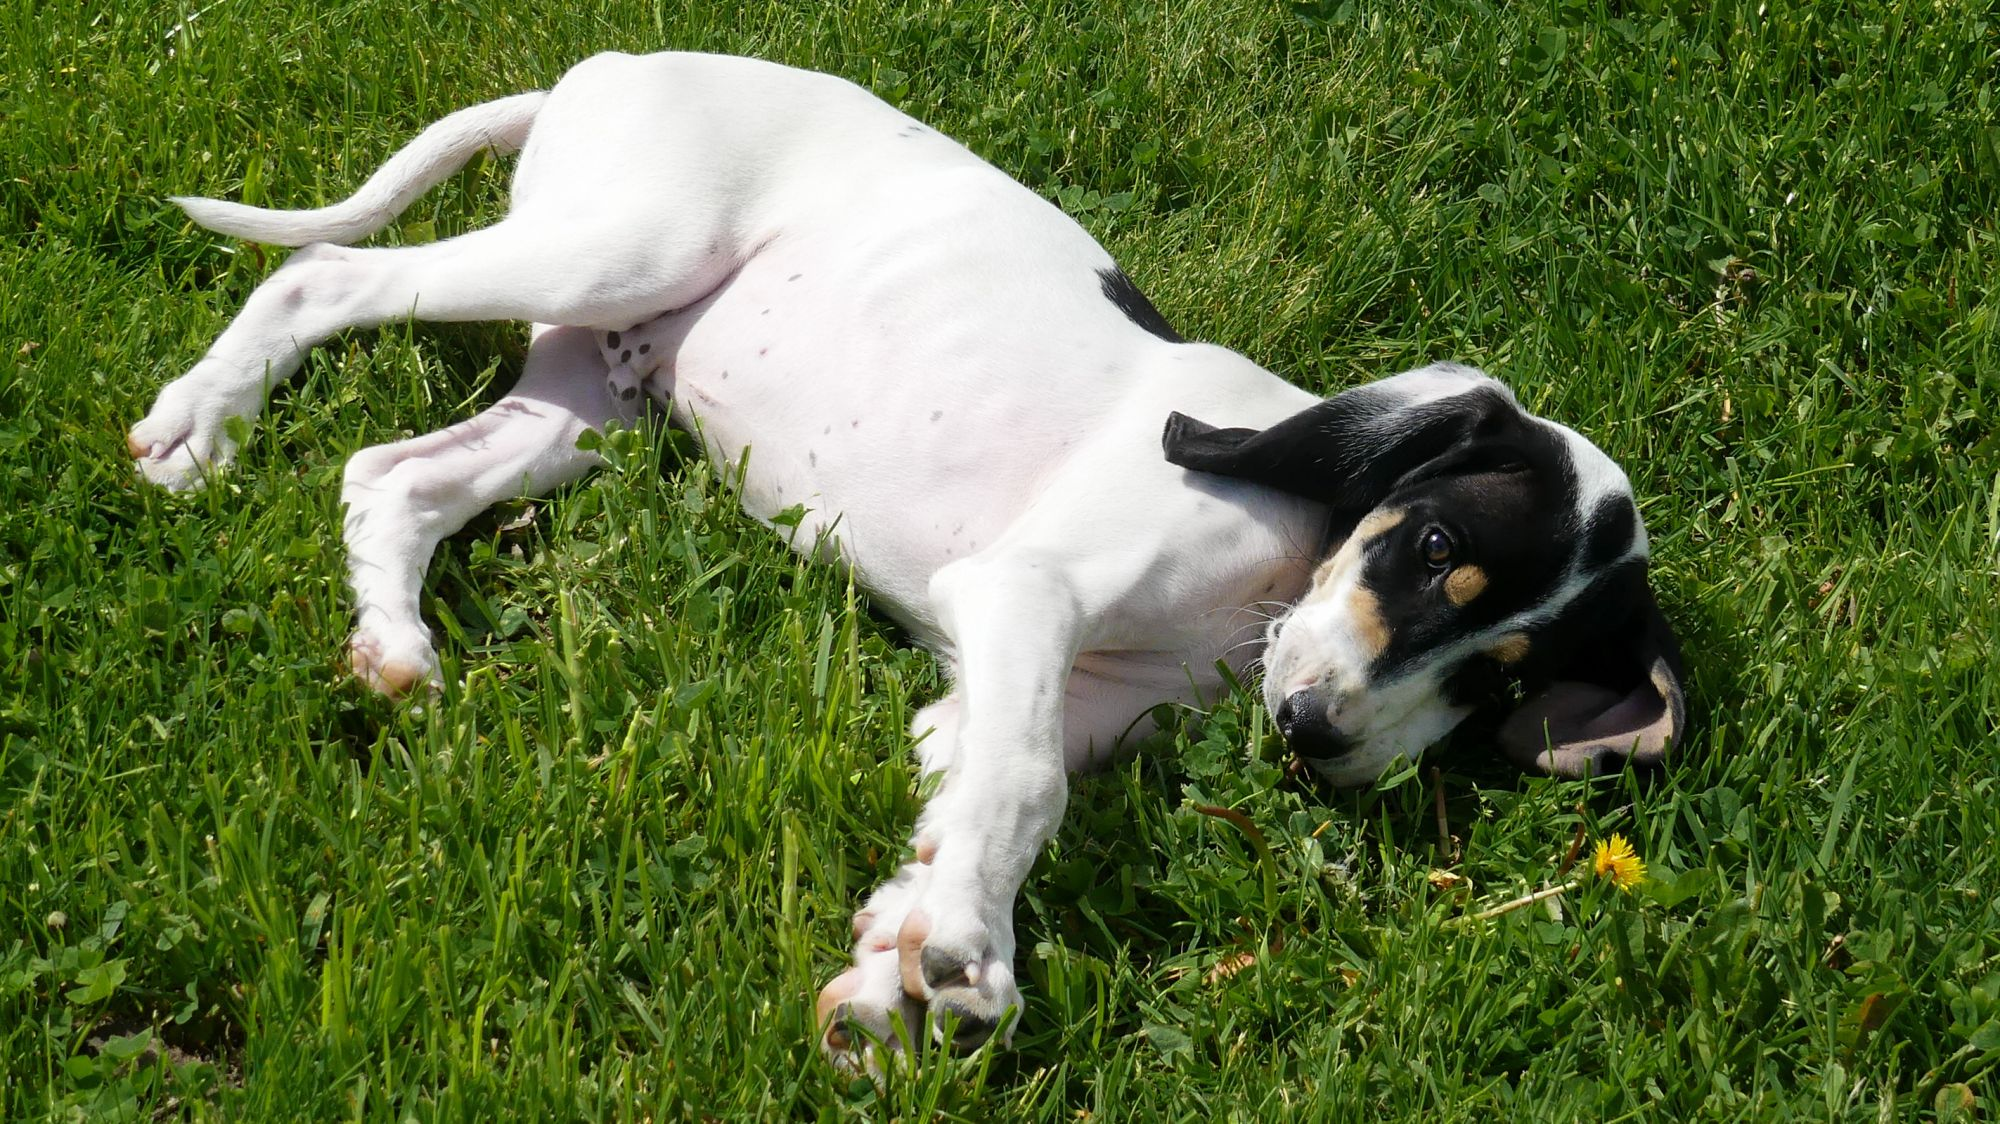 Ariegeois puppy sitting on grass